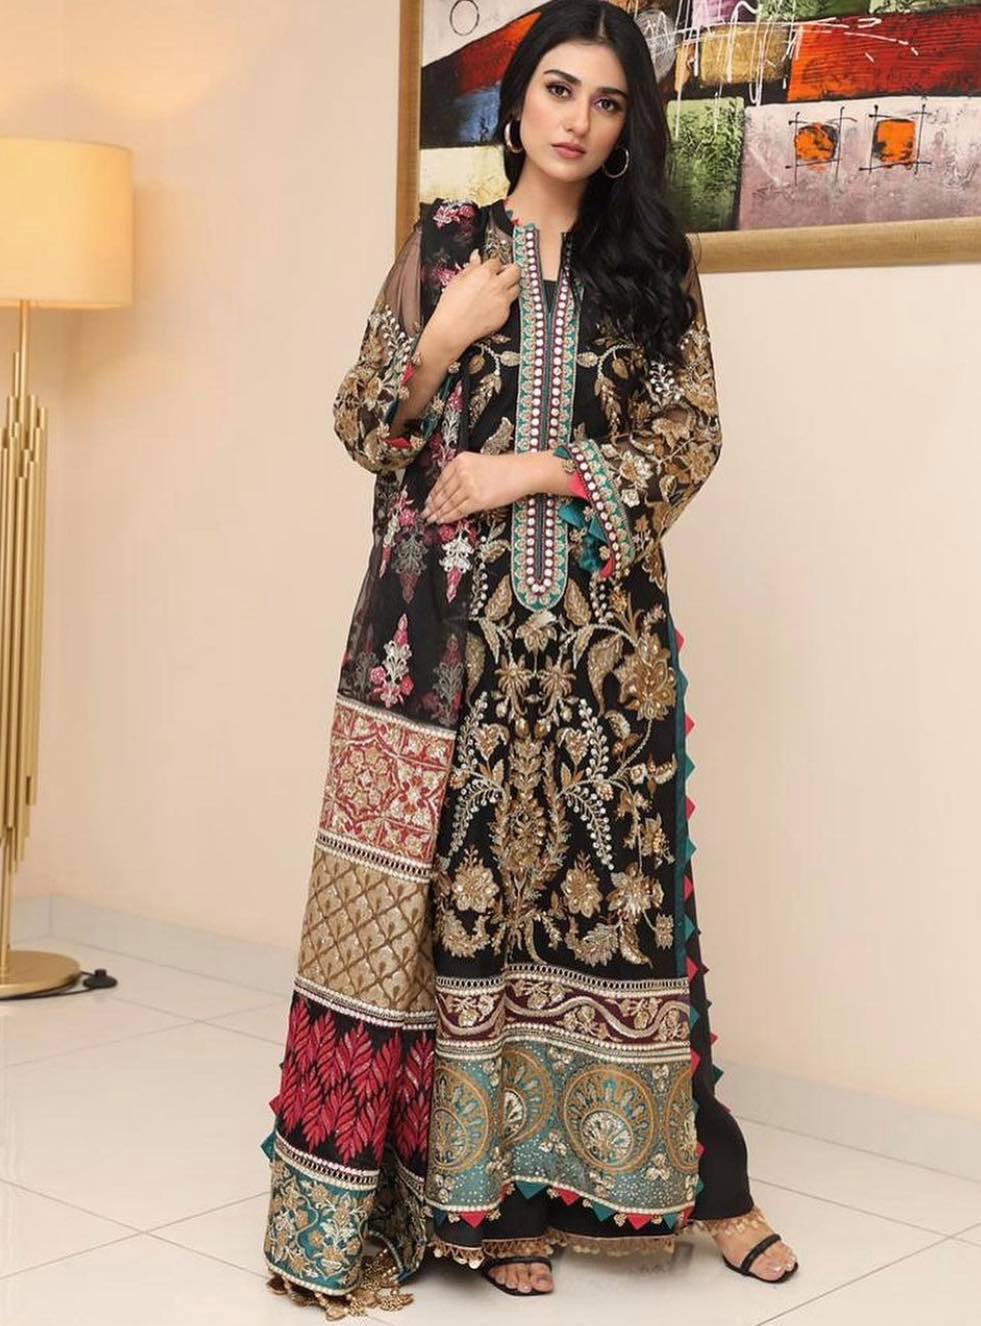 Pakistani Celebrities Best Formal Wear Inspiration 2021